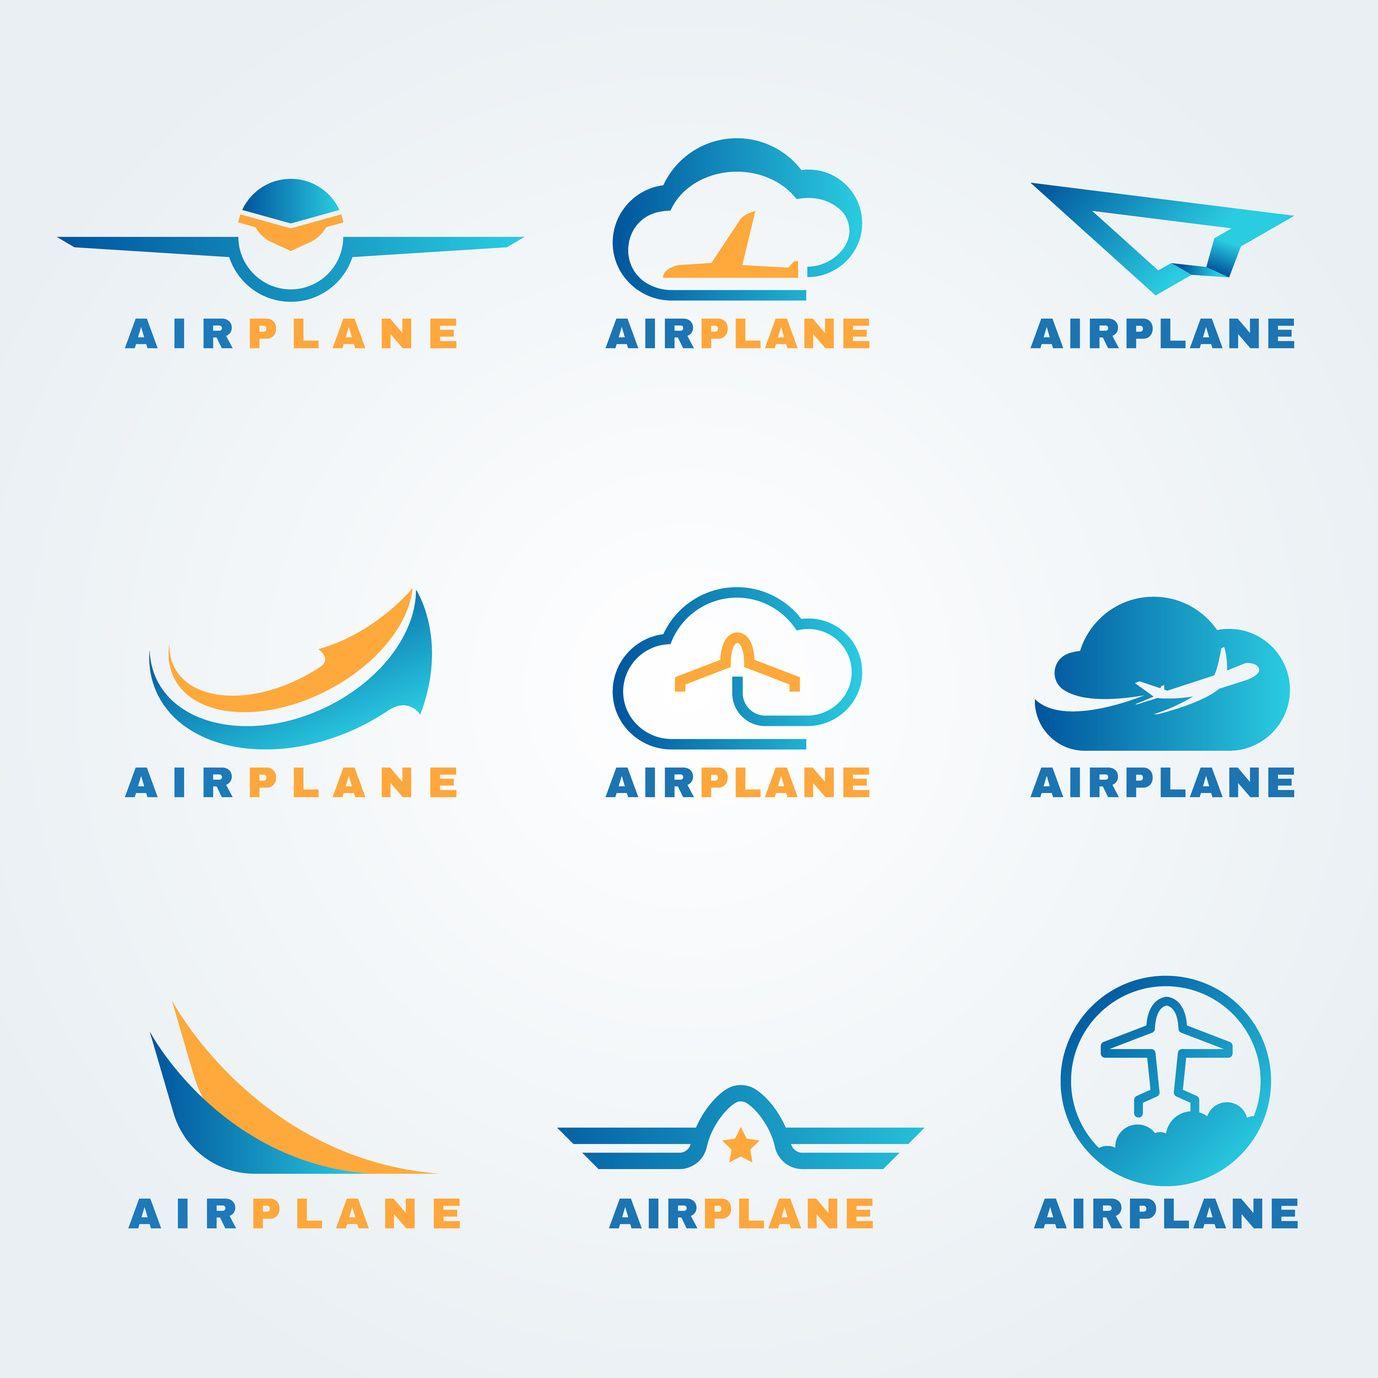 Airplain Logo - 5 Traits of an Unforgettable Airplane Logo Design